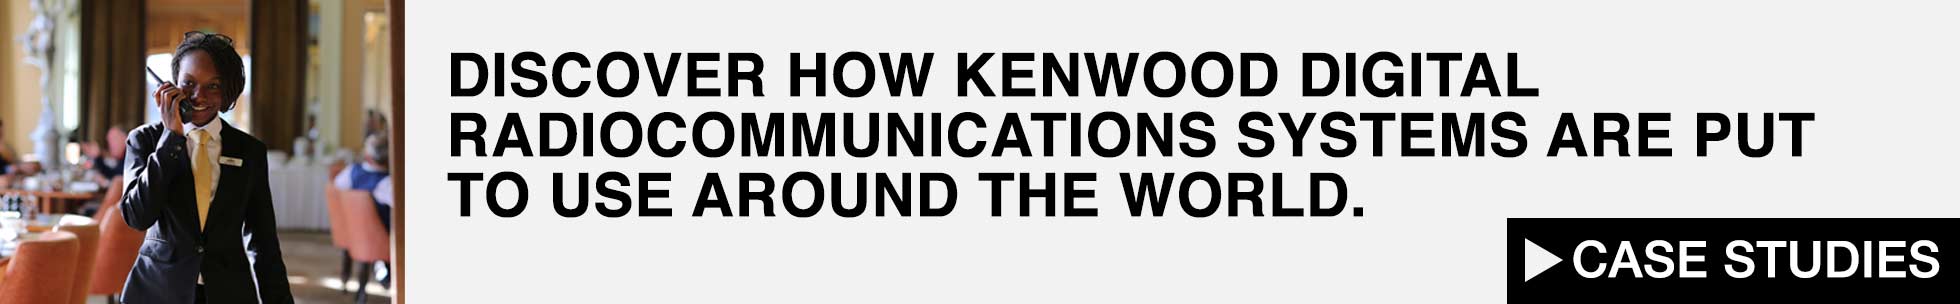 KENWOOD Digtial Case Studies